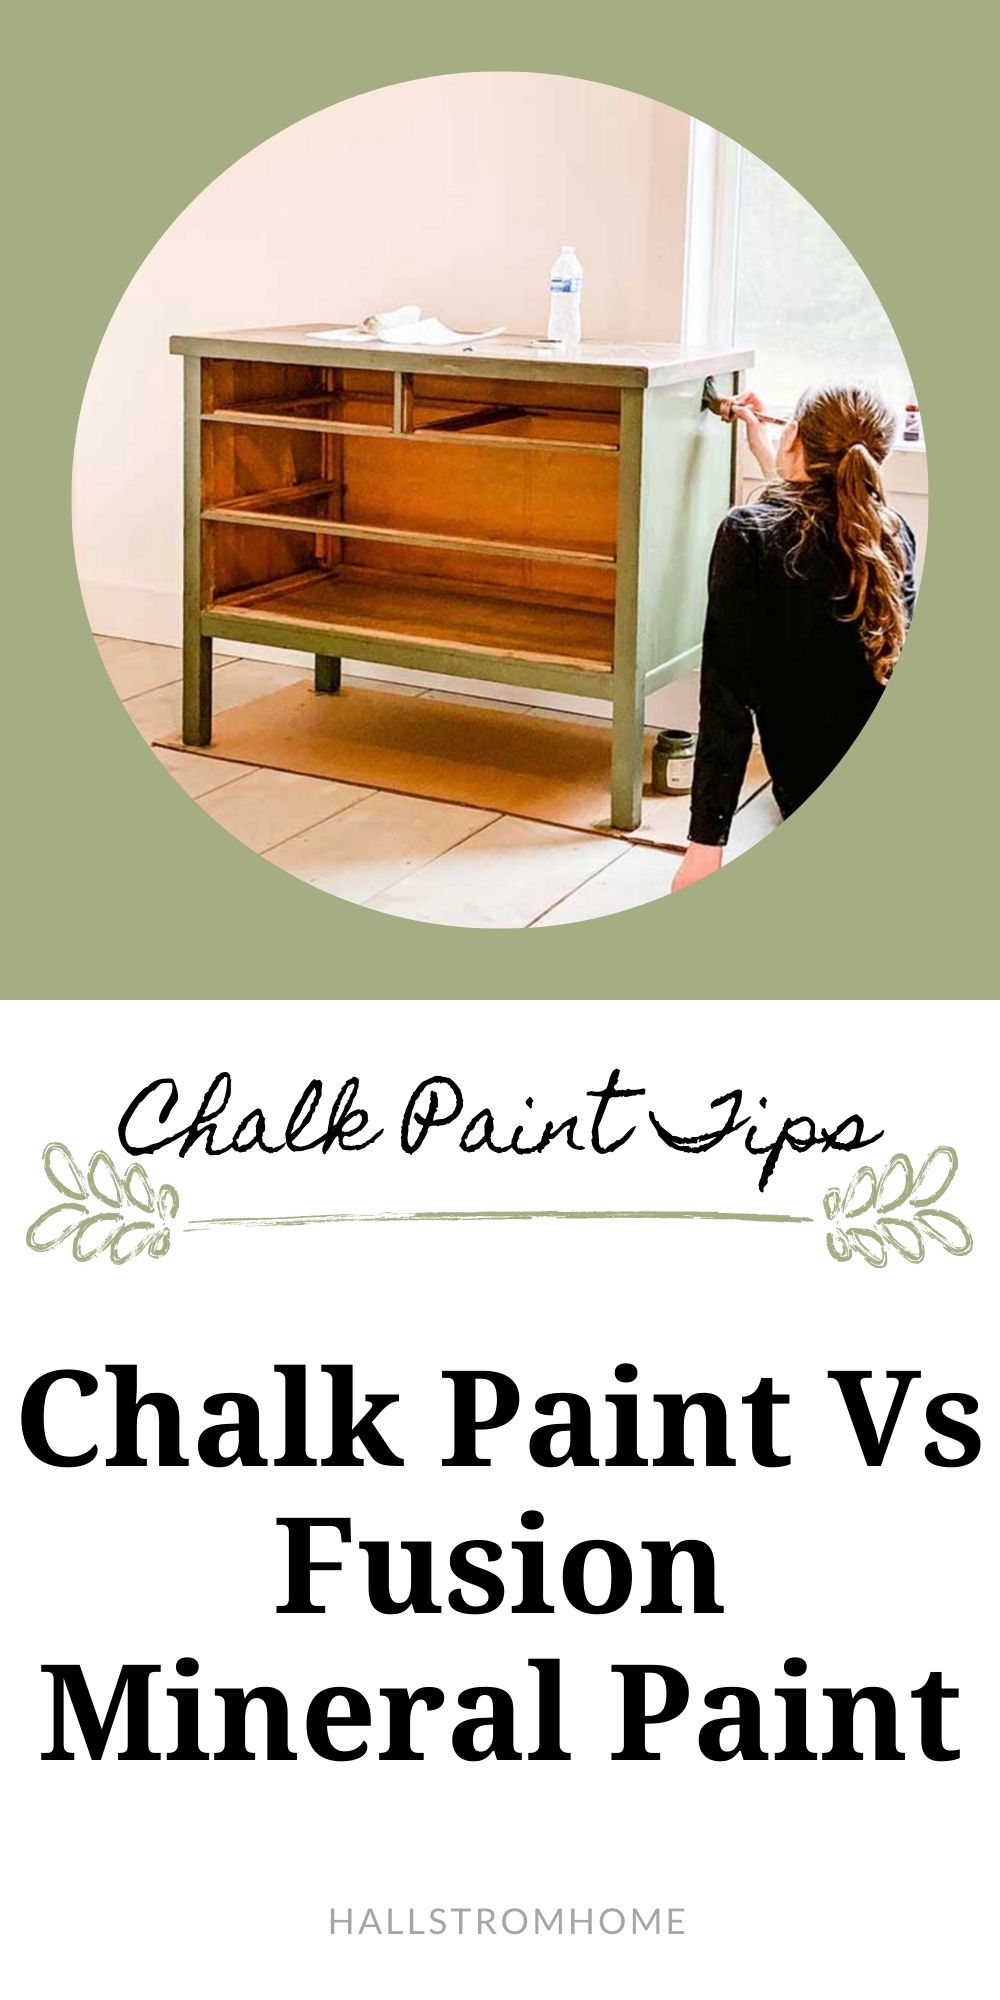 Mineral Paint vs. Chalk Paint